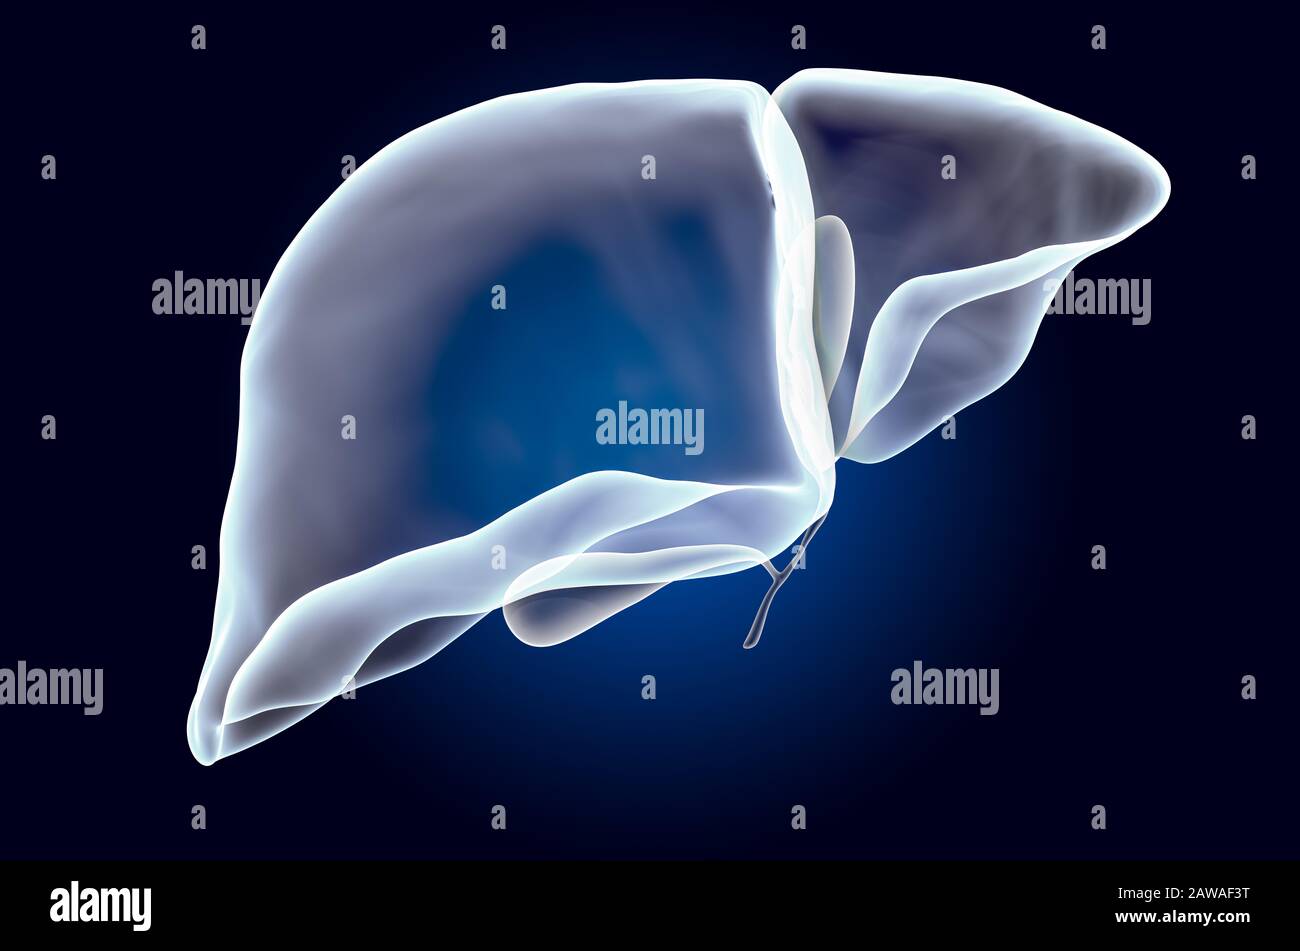 Menschliche Leber mit Gallenblase, Röntgenhologramm. 3D-Rendering auf dunkelblauem Hintergrund Stockfoto